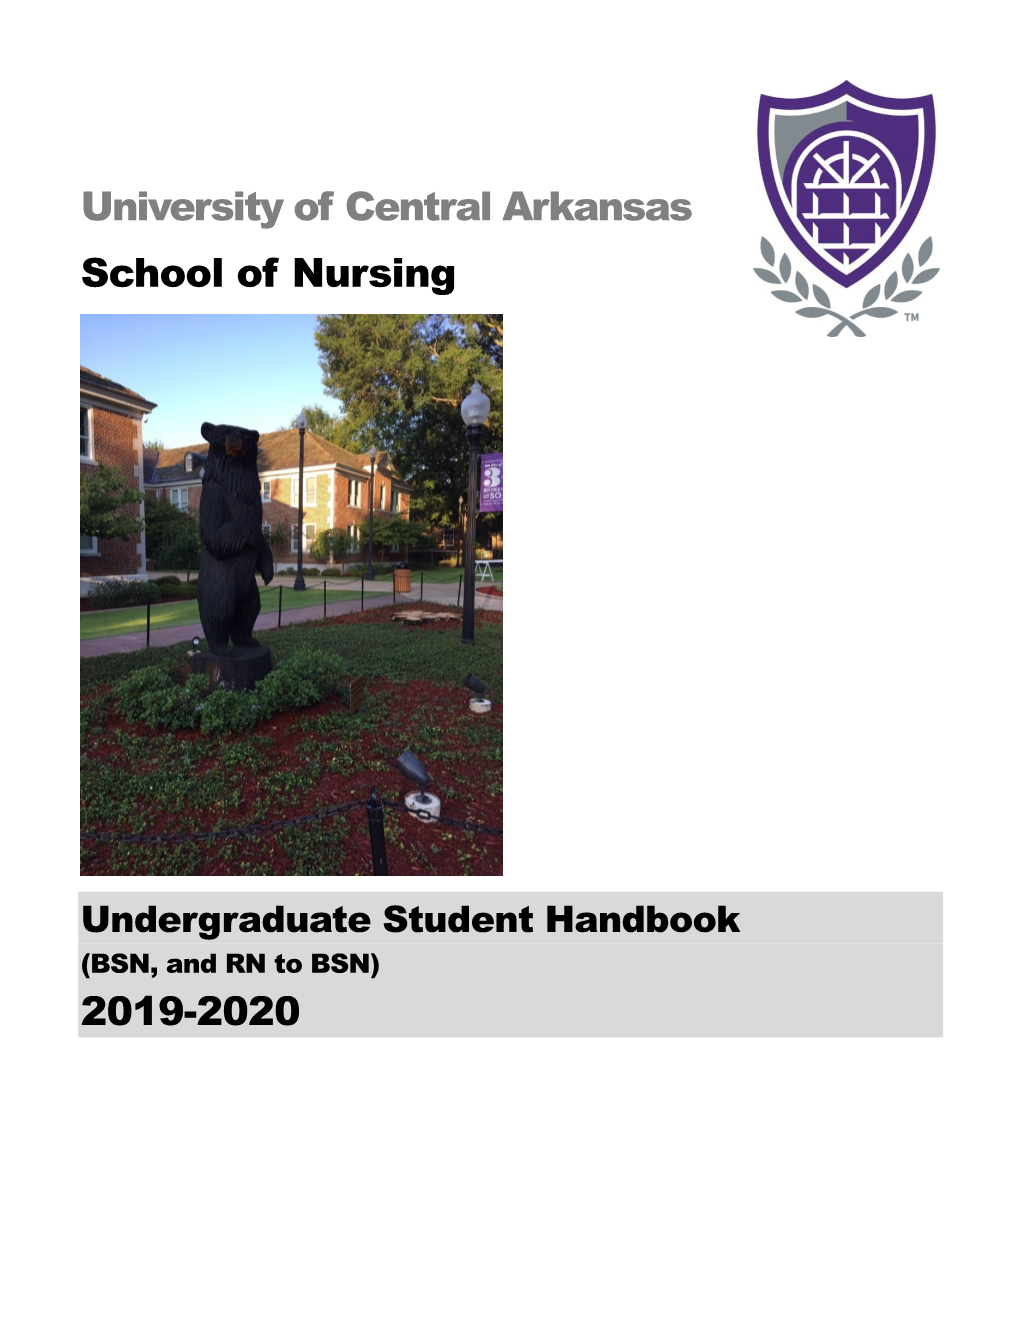 University of Central Arkansas School of Nursing 2019-2020